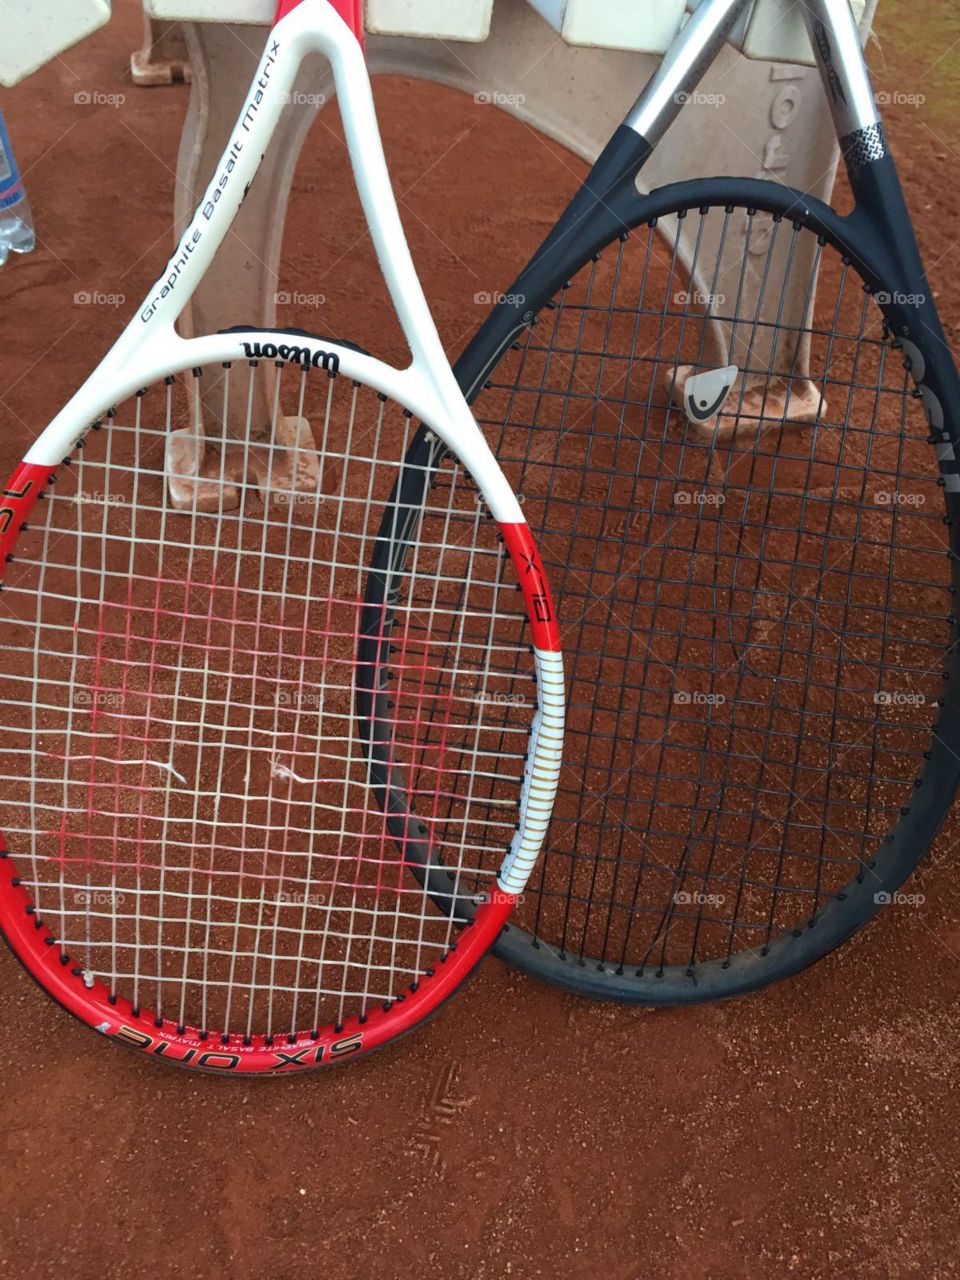 Tennis racket Schläger